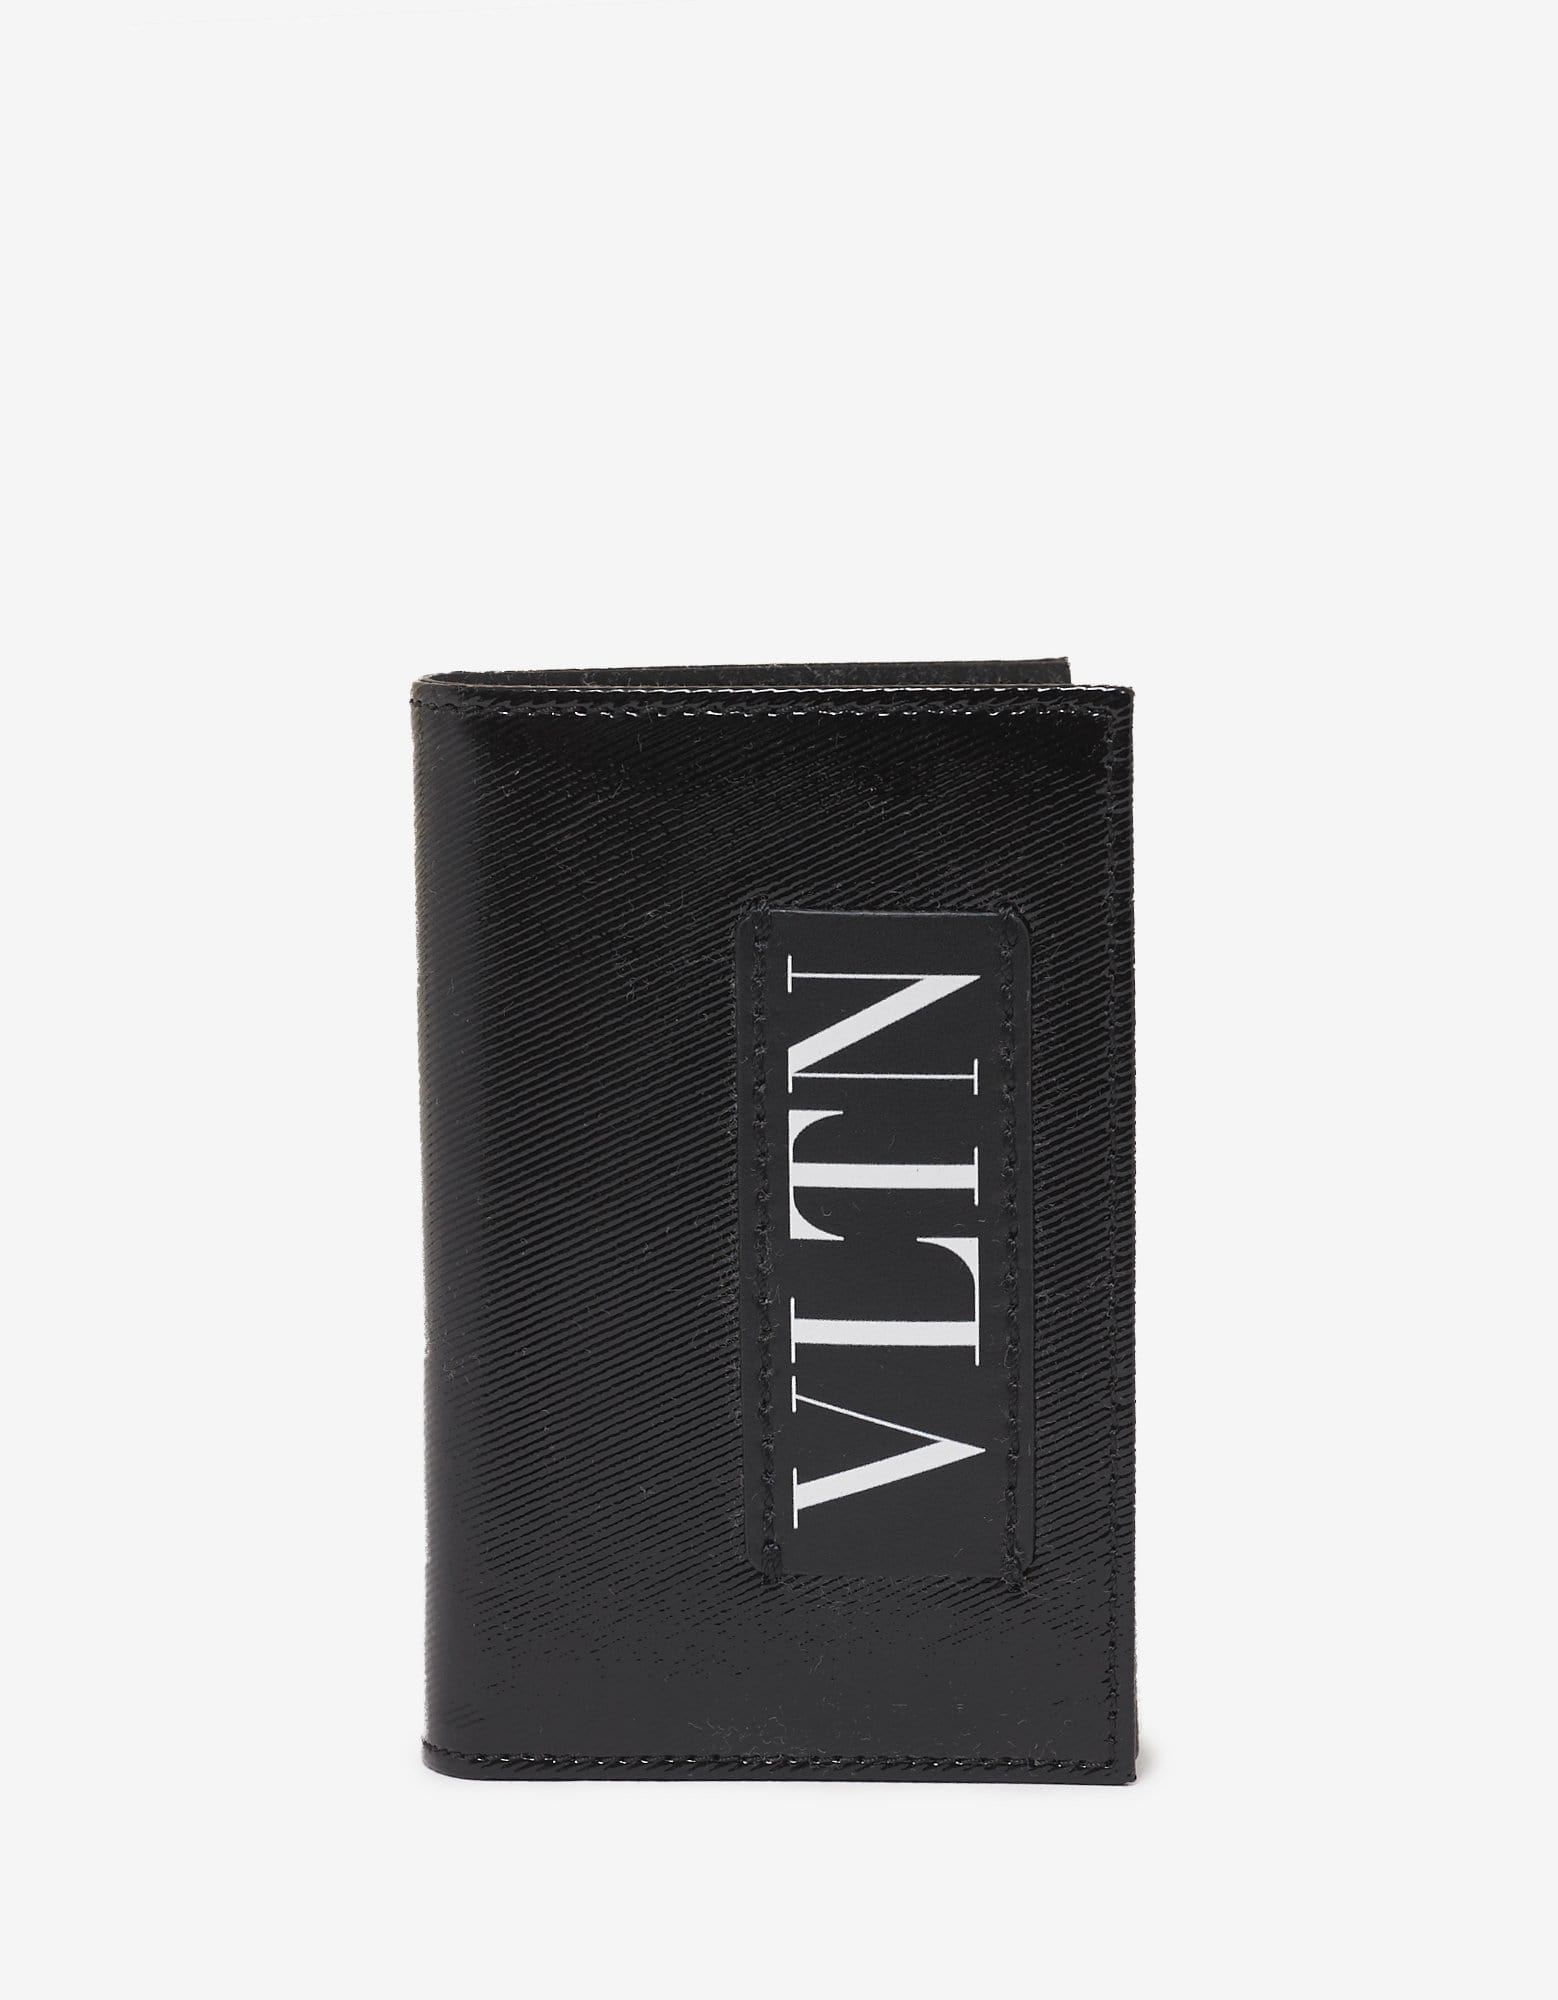 Black Patent Leather VLTN Card Wallet - 1